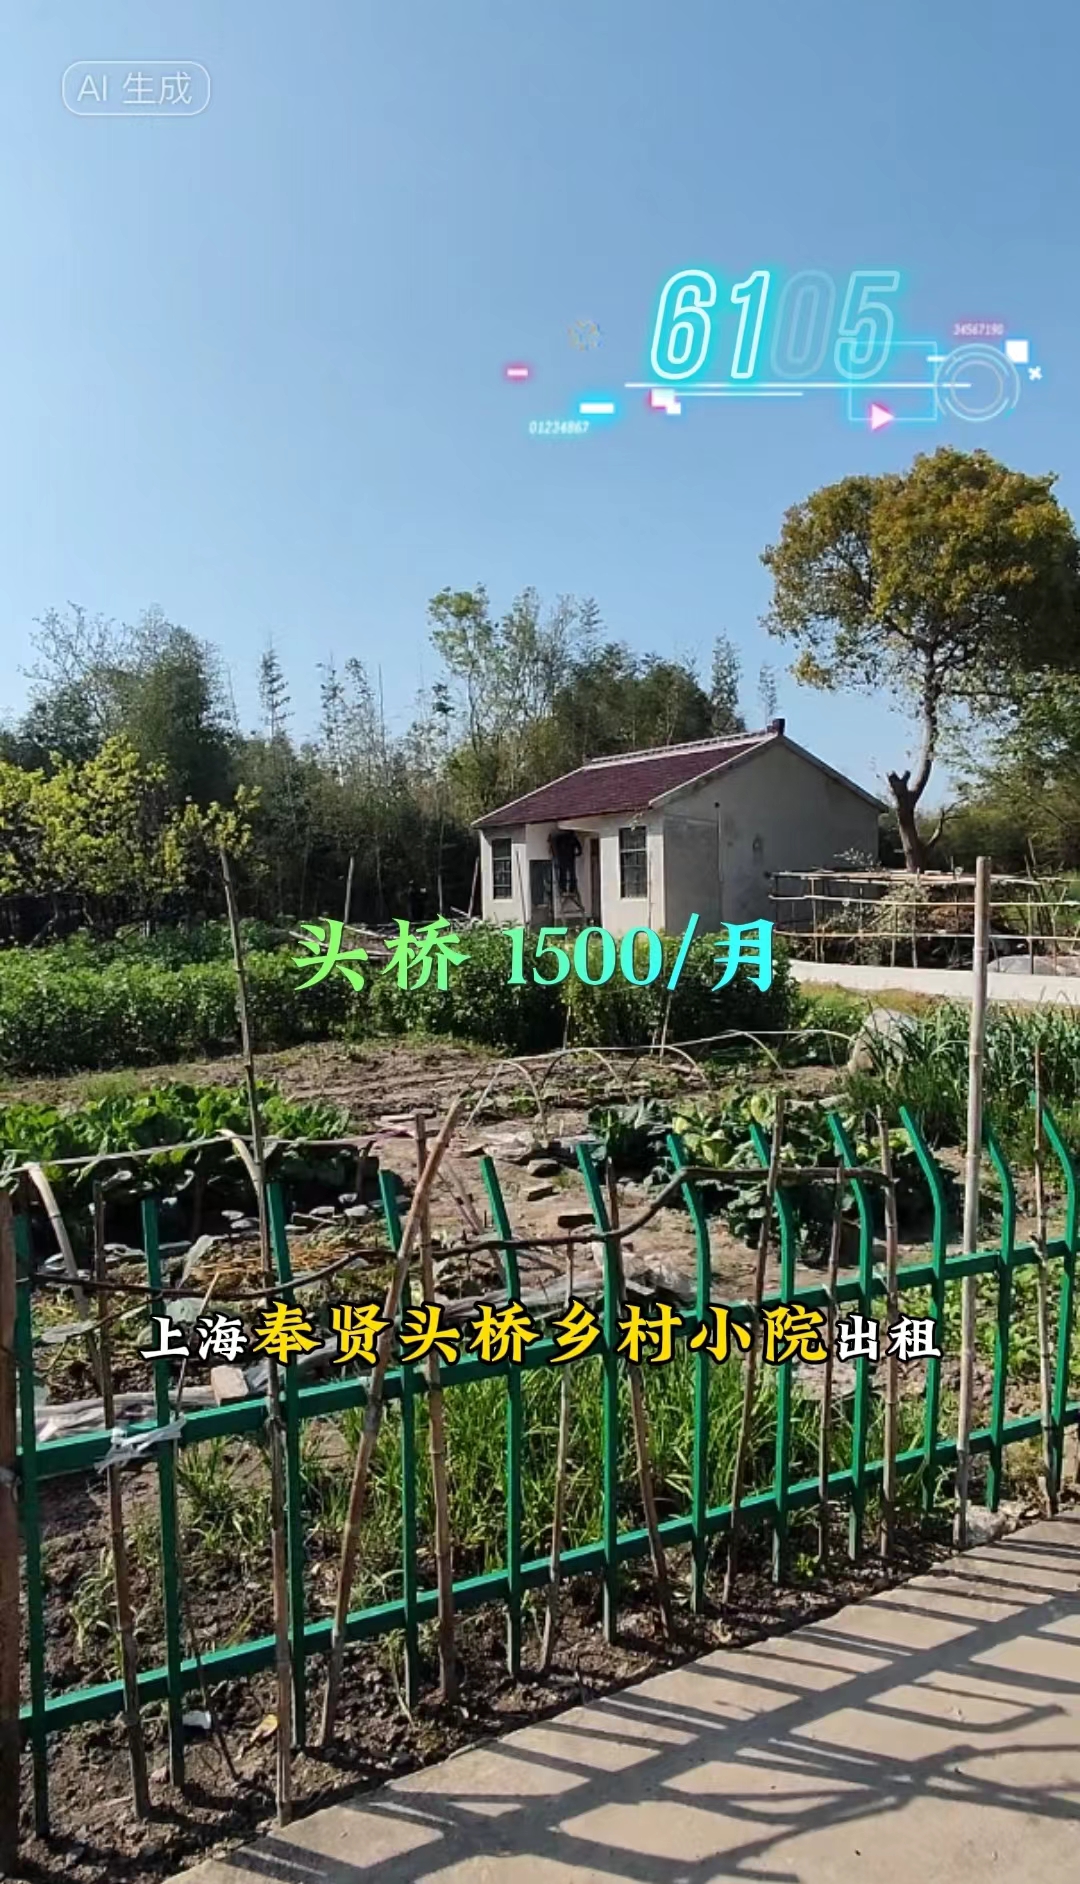 （编号：6105）上海奉贤头桥独栋小院出租，门前可围院子，屋后有菜地半亩，1500/月